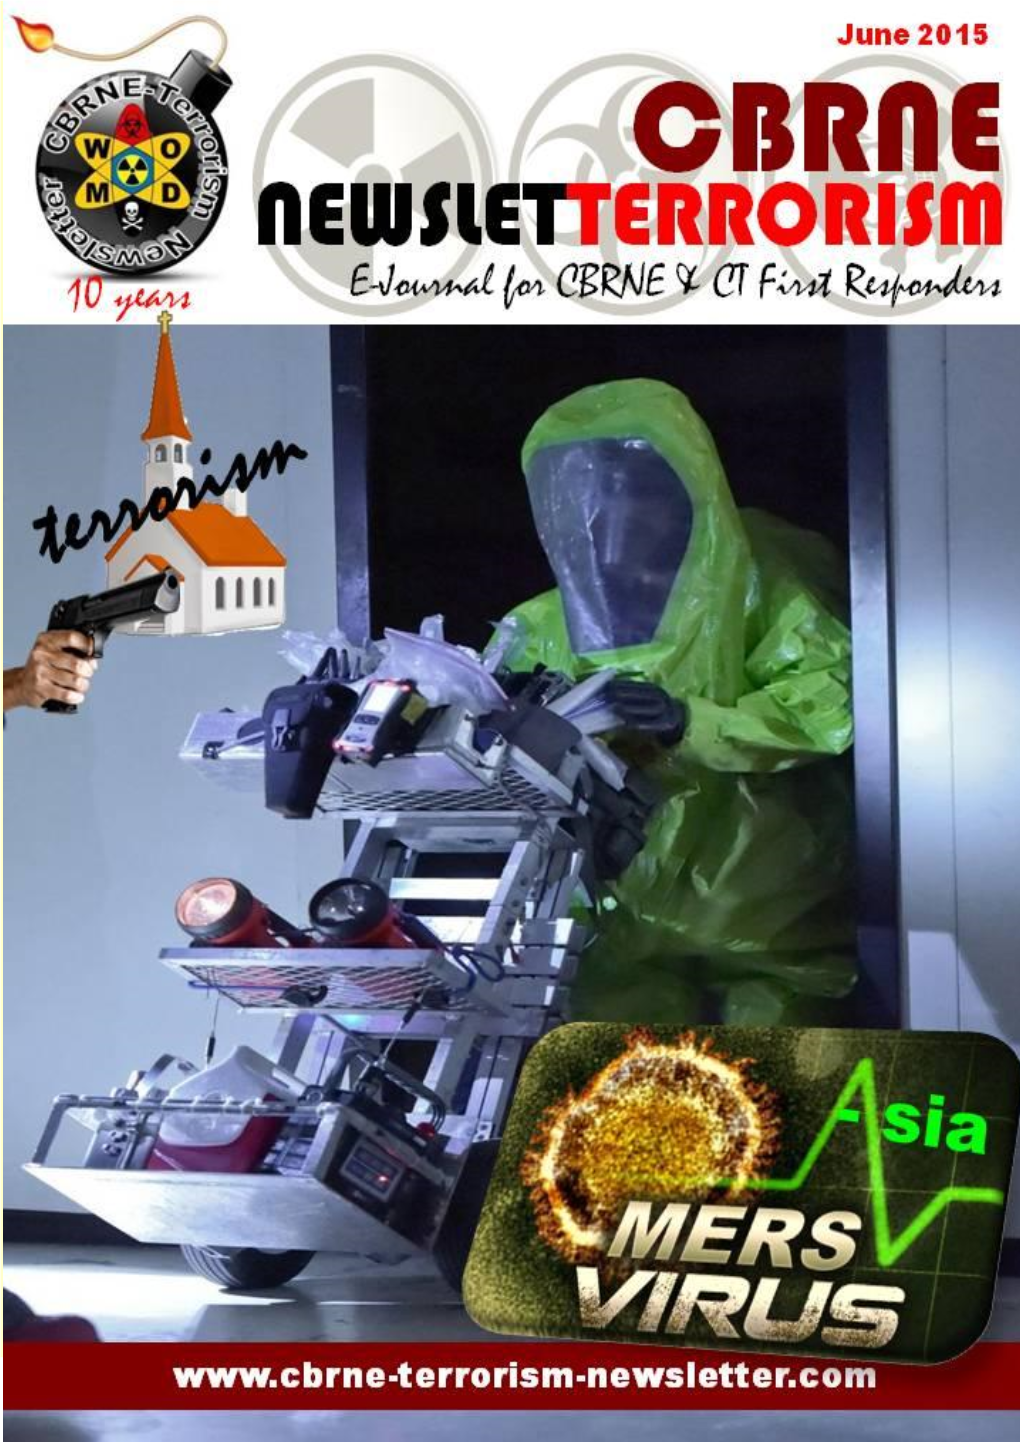 CBRNE-Terrorism Newsletter June 2015